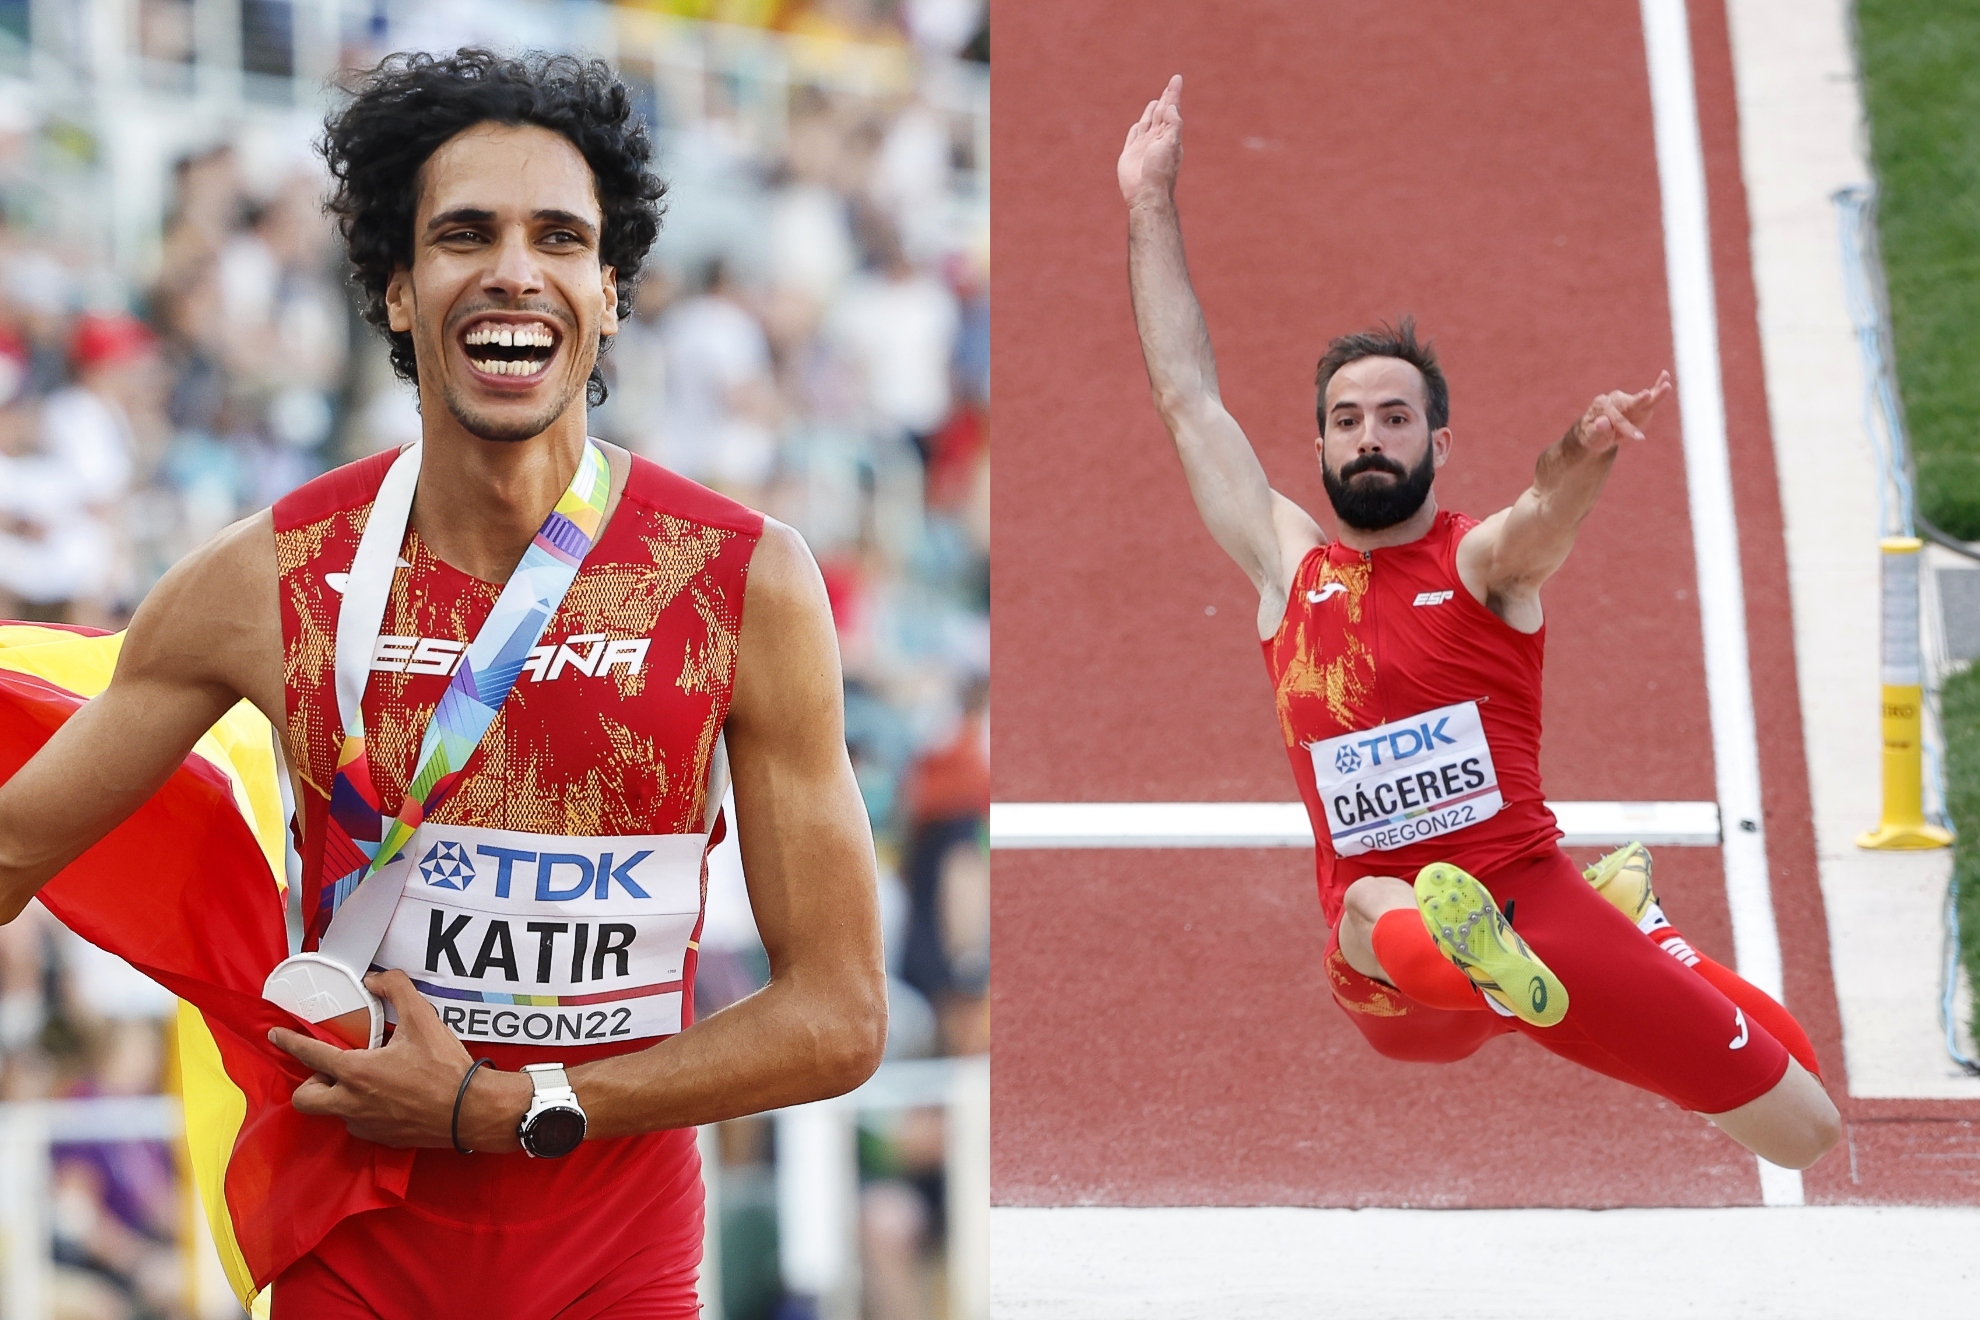 Europeo de Atletismo: resumen y resultados de las finales de longitud, 5000 m y 100 m